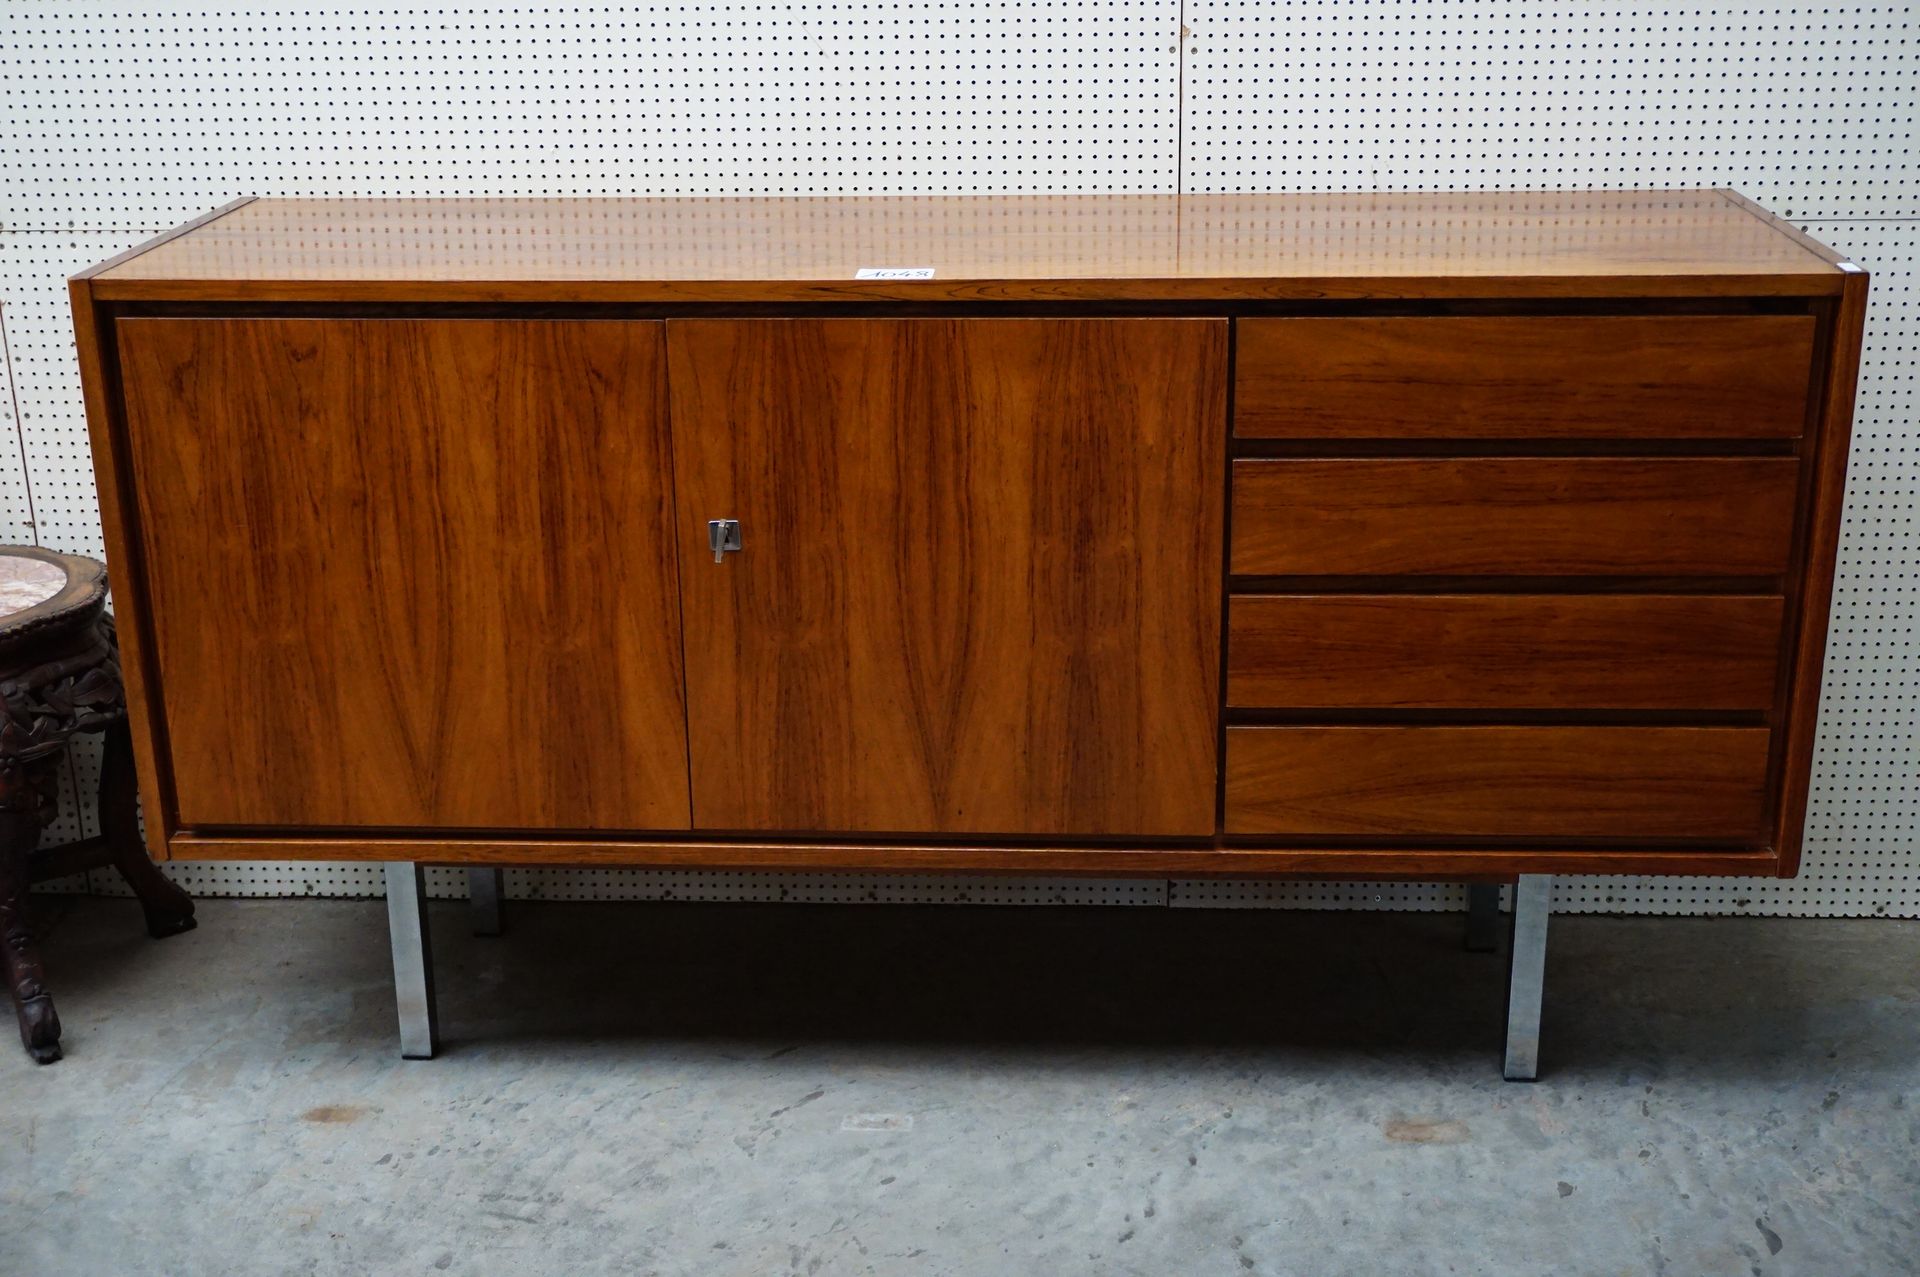 Null 复古餐具柜 - 1960年代 - 可能是丹麦制造 - 有2个门和4个抽屉 - 长：149厘米